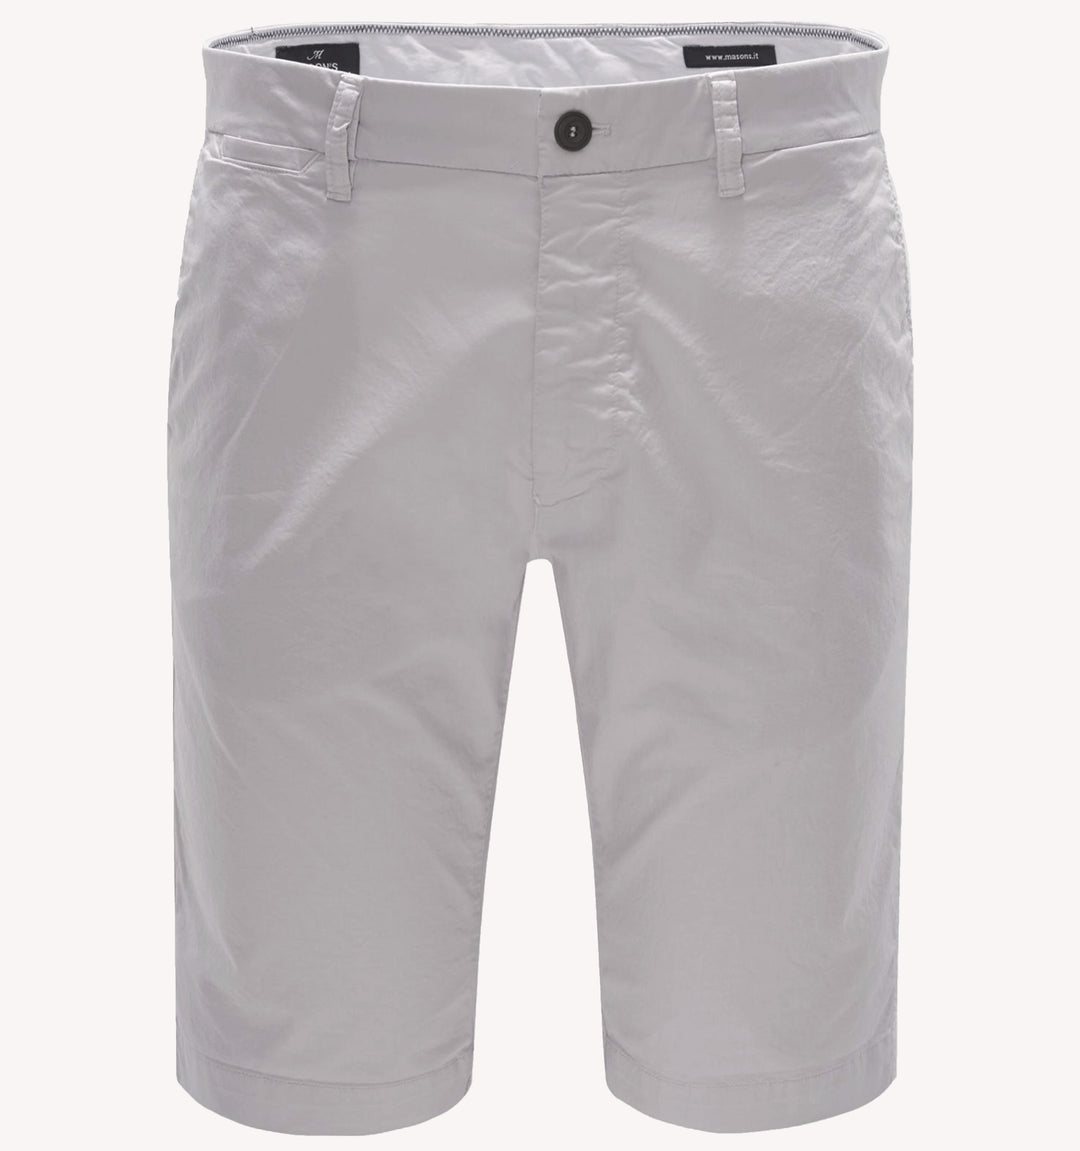 Mason's London Chino Bermuda Shorts in Light Grey